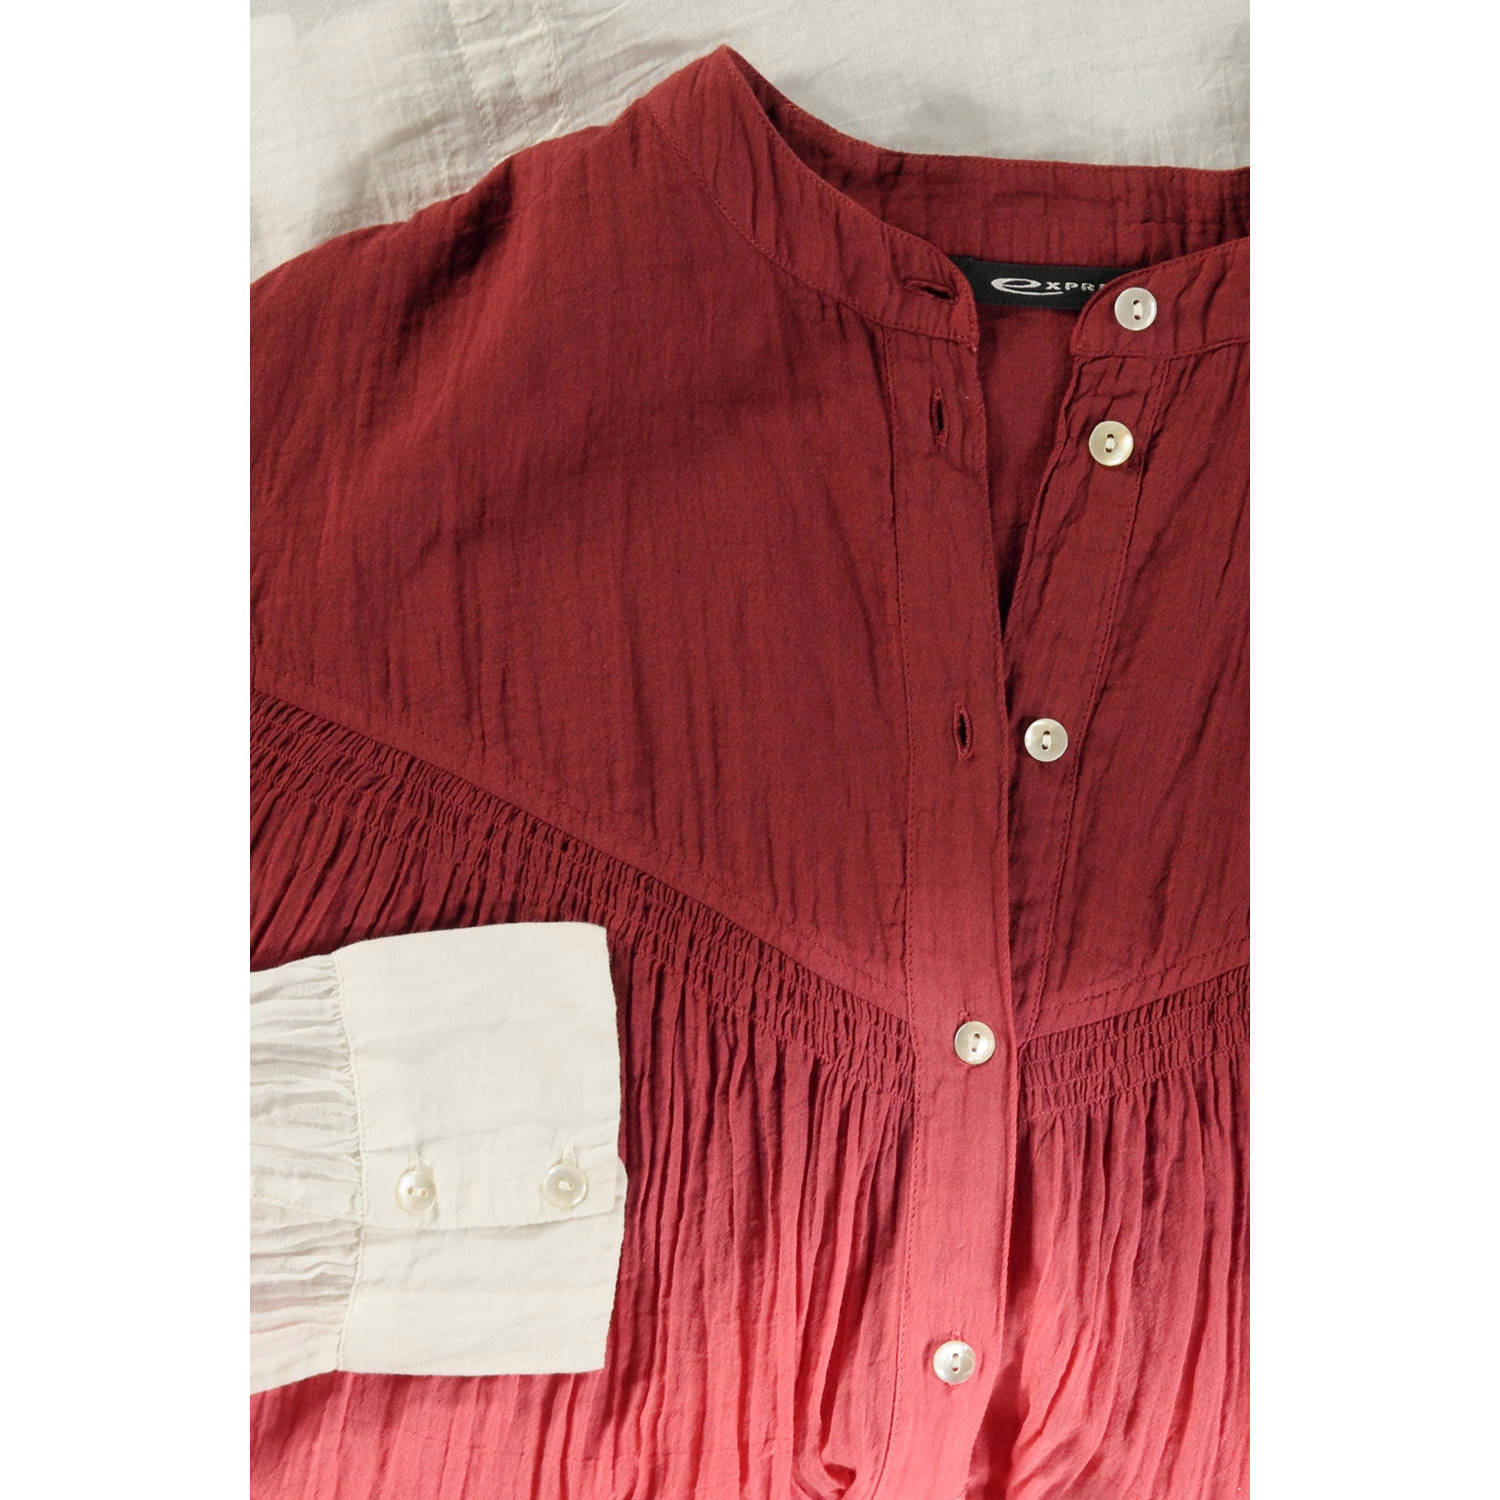 Expresso tie-dye blouse donkerrood roze ecru